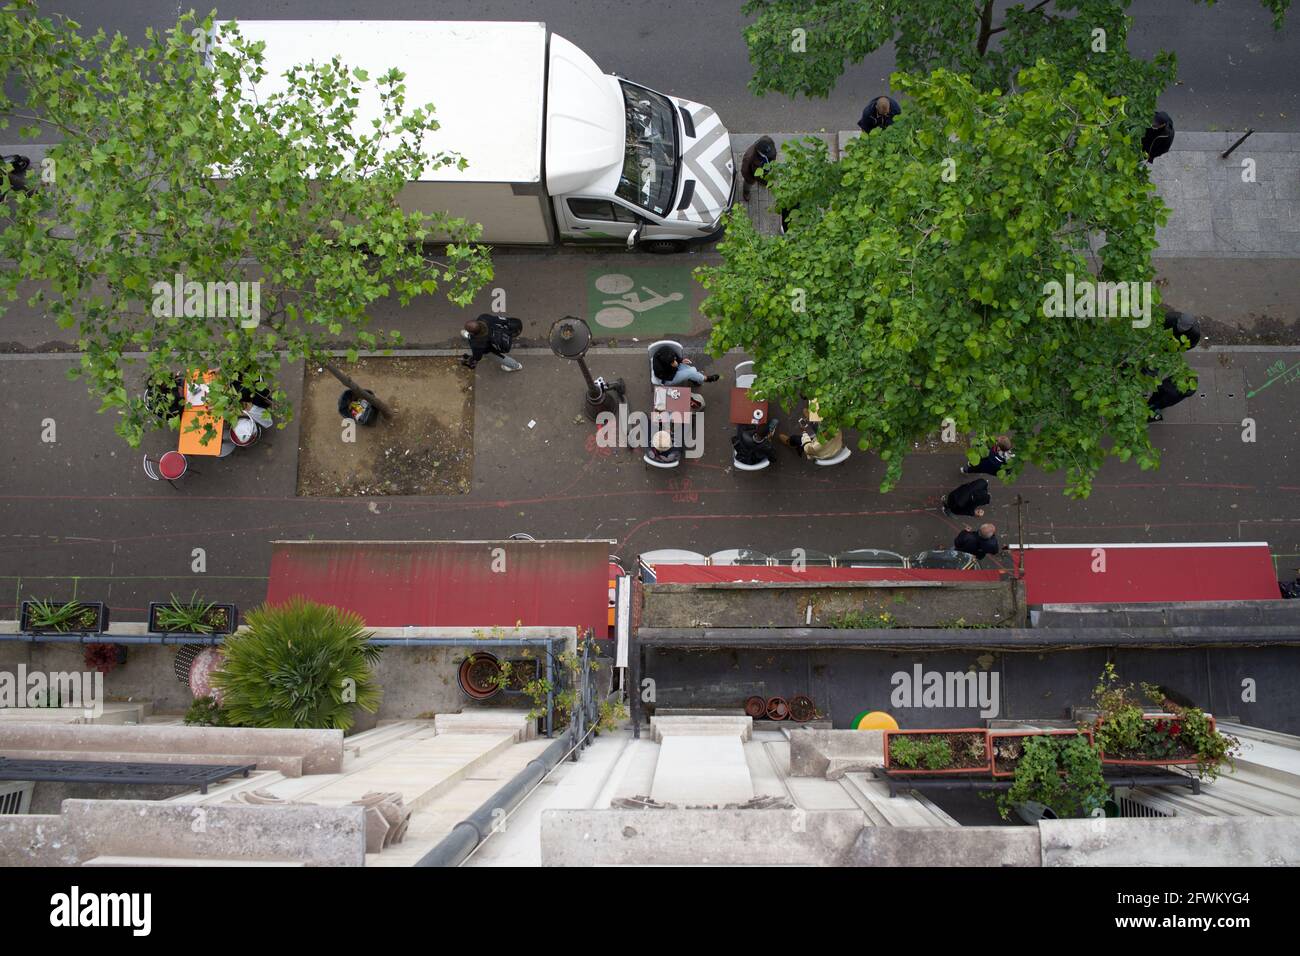 Vue depuis un balcon de boulevard des Parisiens assis sur une terrasse temporaire de café, l'un des nombreux sur les trottoirs de Paris permettant aux clients de boire dehors après que les restrictions de verrouillage de Covid-19 ont été assouplies - Boulevard Barbès, Paris, France - Mai 2021 Banque D'Images